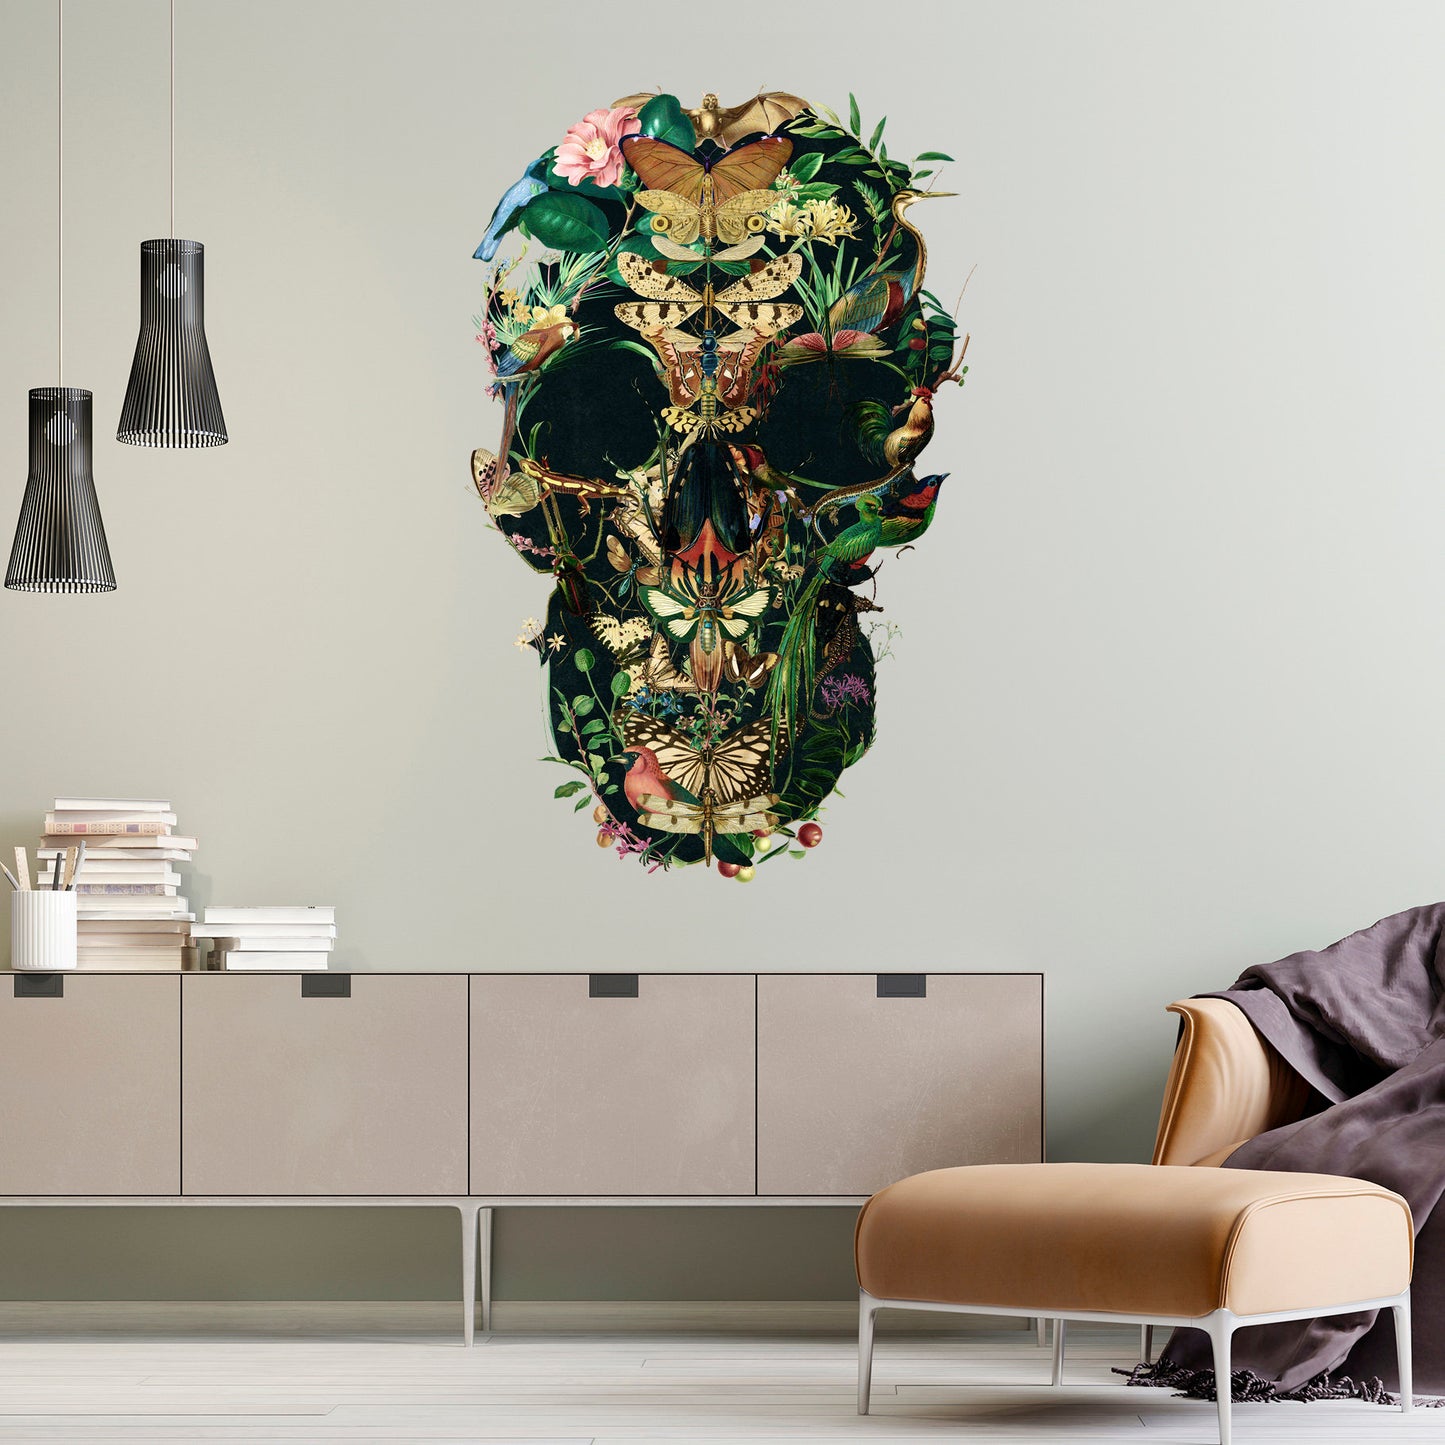 Large Skull Wall Decal, Floral Skull Wall Sticker, Sugar Skull Wall Art Home Decor, Gothic Skull Wall Art Gift, Boho Flower Skull Wall Decal